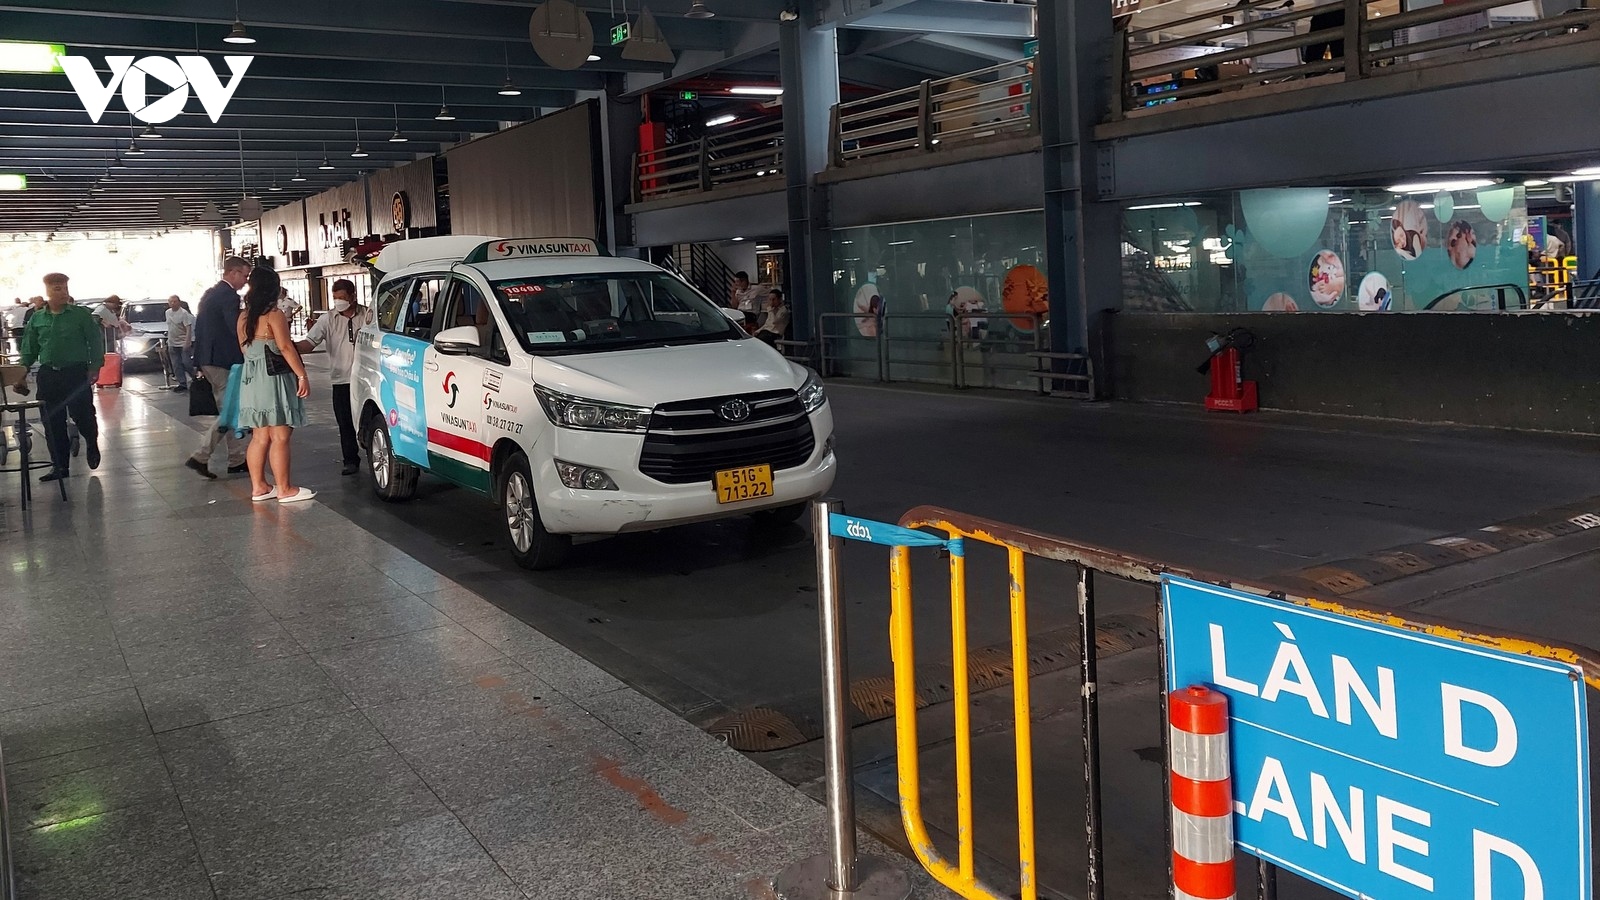 Thu phí taxi sân bay: Cần hài hòa lợi ích và nhiệm vụ